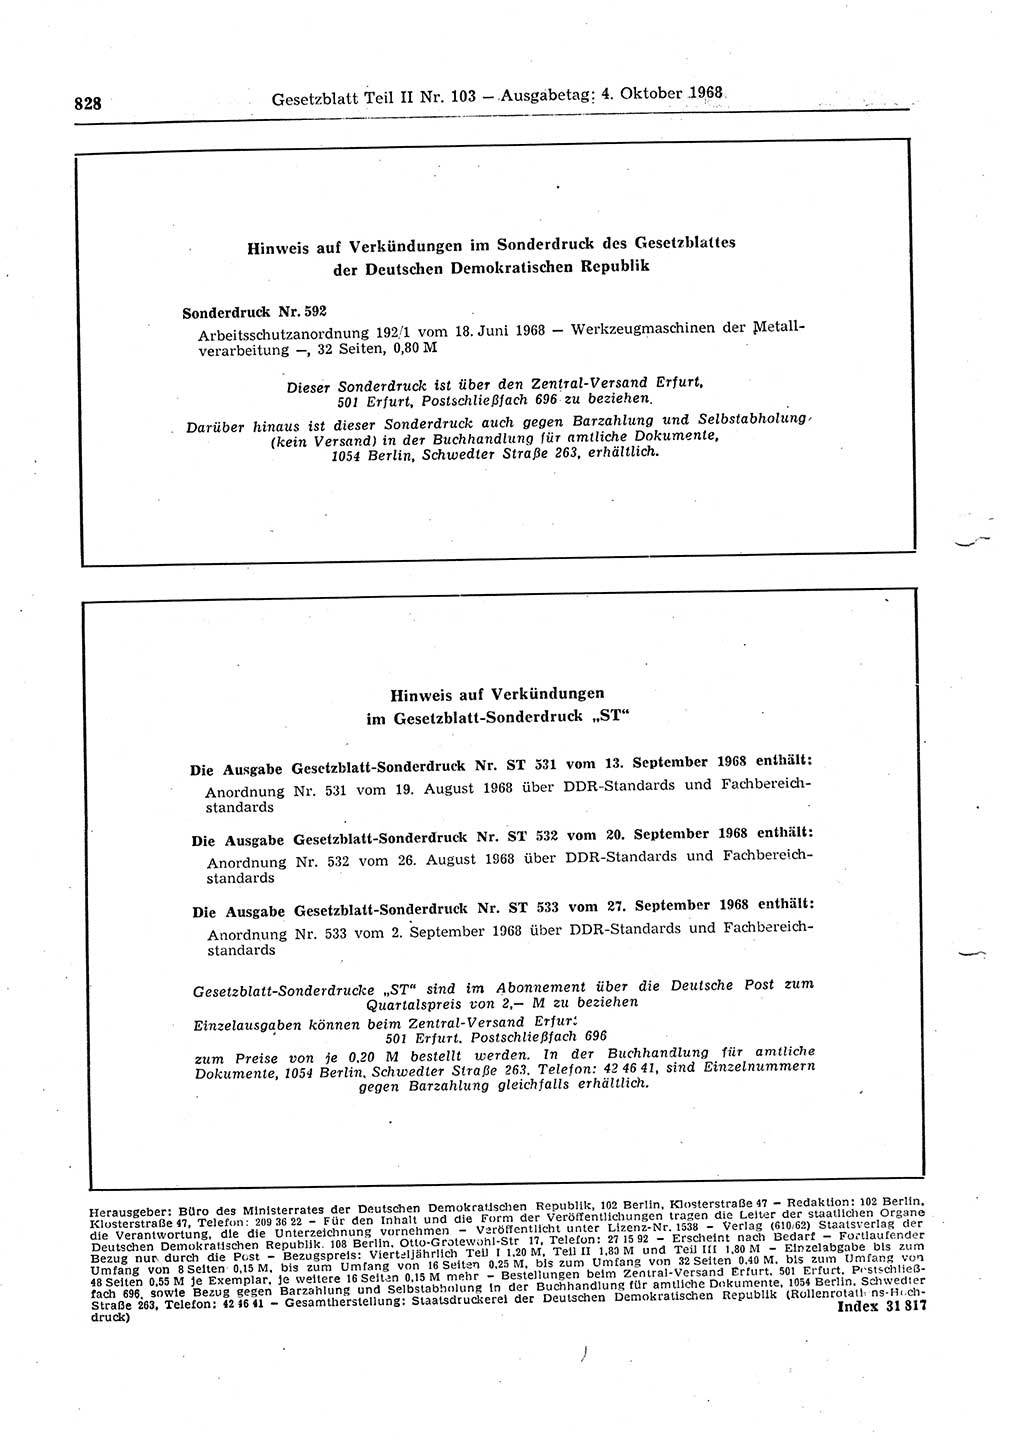 Gesetzblatt (GBl.) der Deutschen Demokratischen Republik (DDR) Teil ⅠⅠ 1968, Seite 828 (GBl. DDR ⅠⅠ 1968, S. 828)